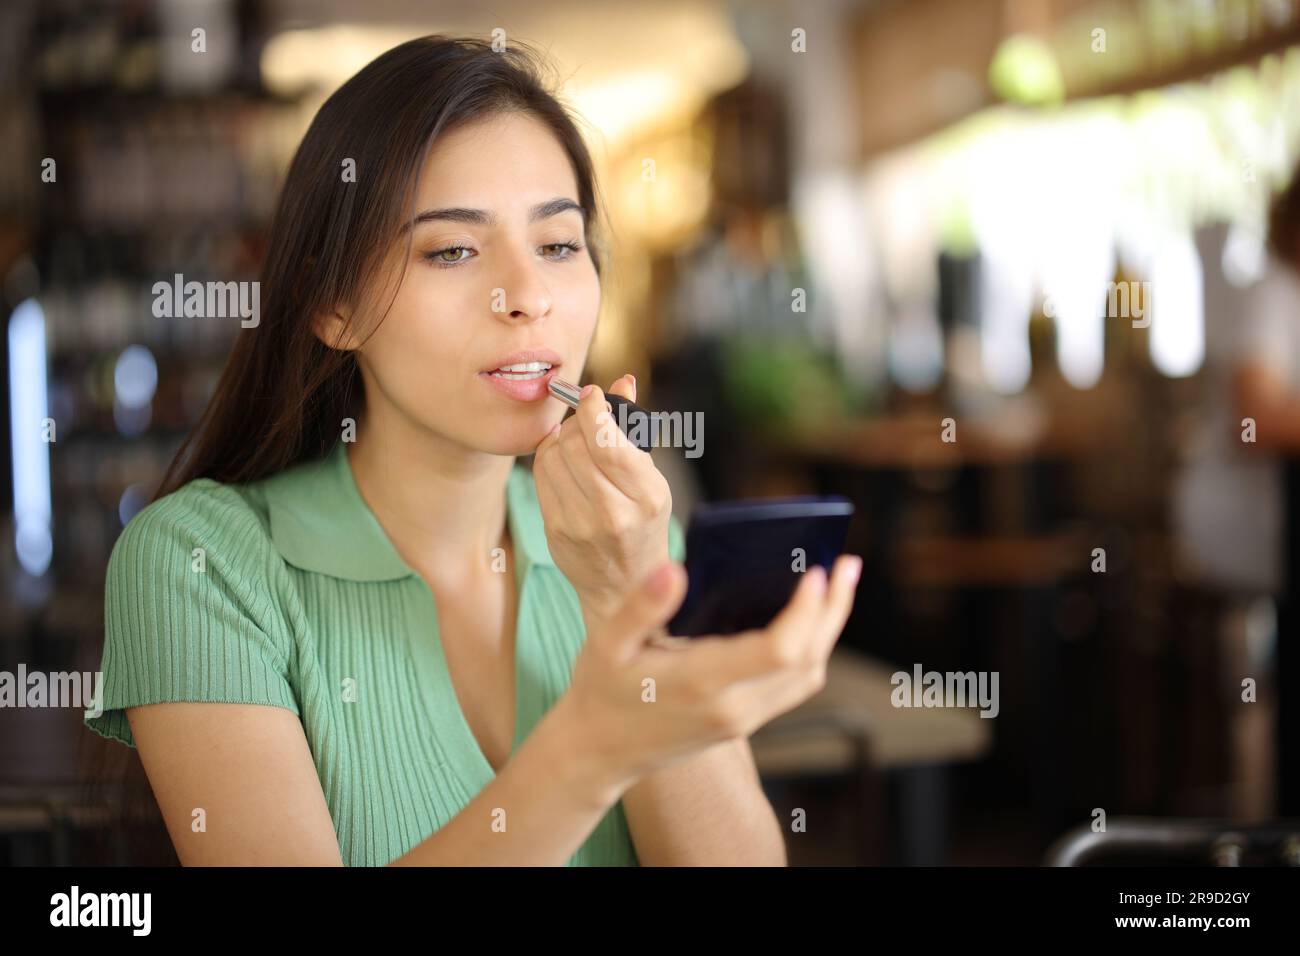 Eine Frau malte Lippen, bevor sie sich in einem Restaurant verabredet hat Stockfoto